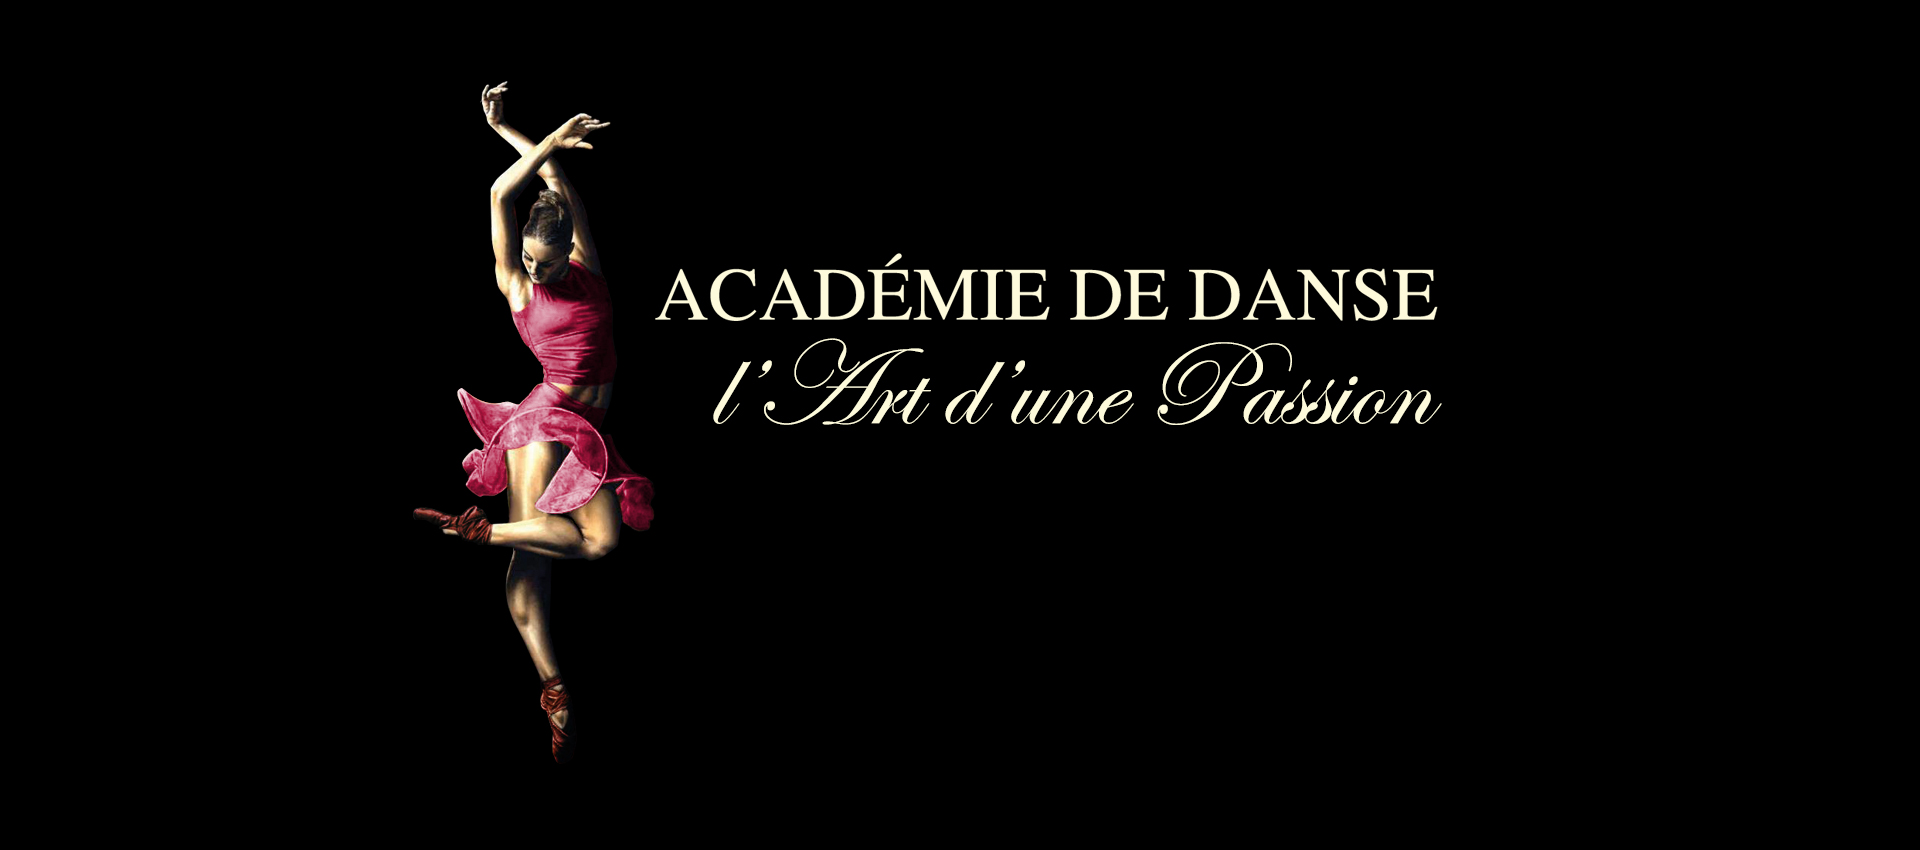 Académie de danse L'Art d'une Passion